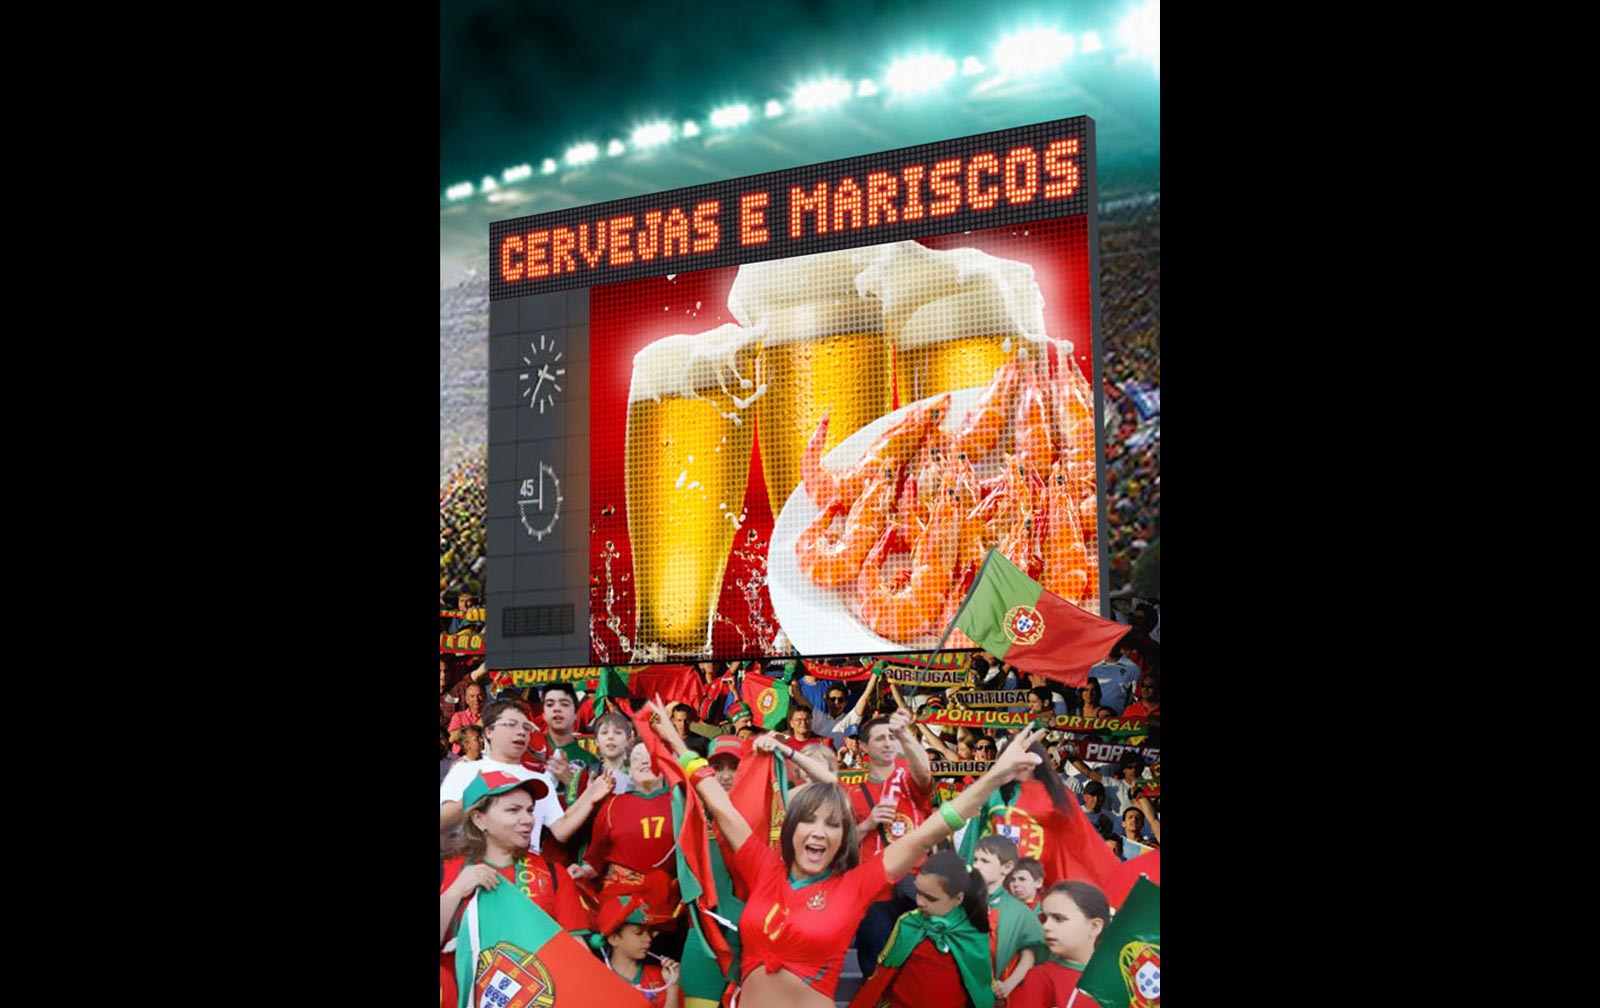 Visuel couverture catalogue promotionnel pour Continent au Portugal